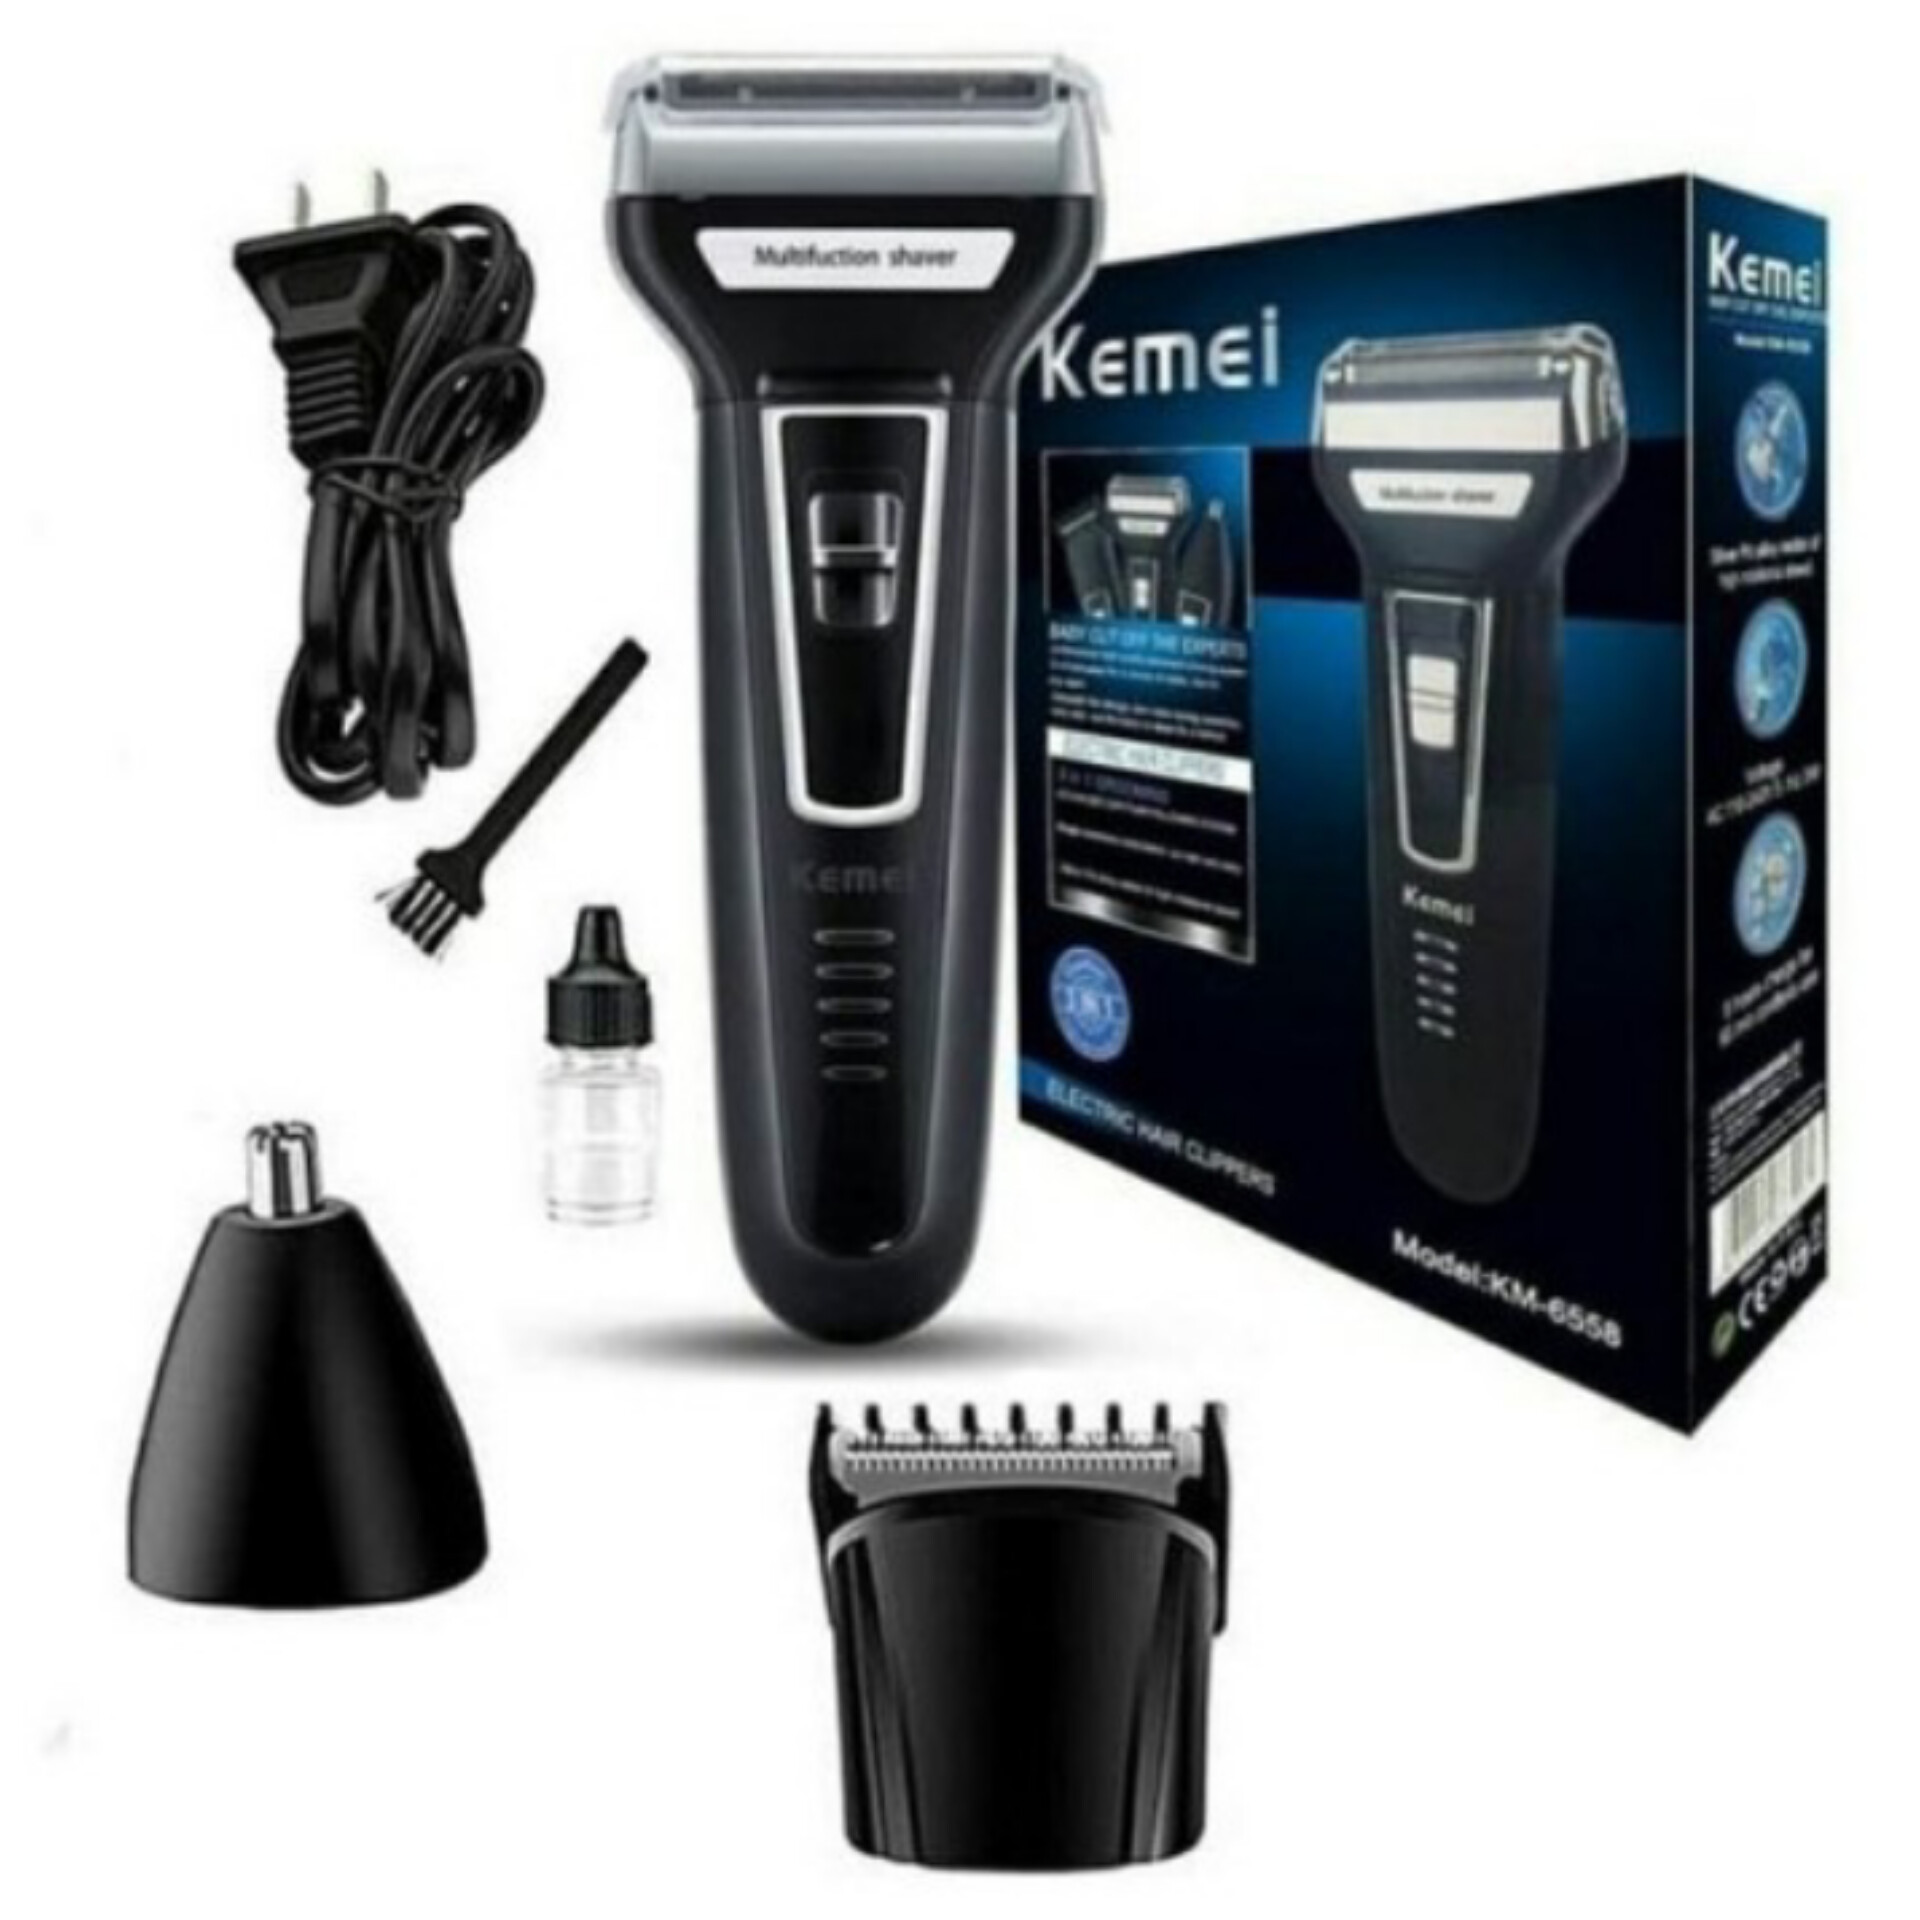 ماشین اصلاح سه کاره کیمی مدل KM-6558 hair trimmer